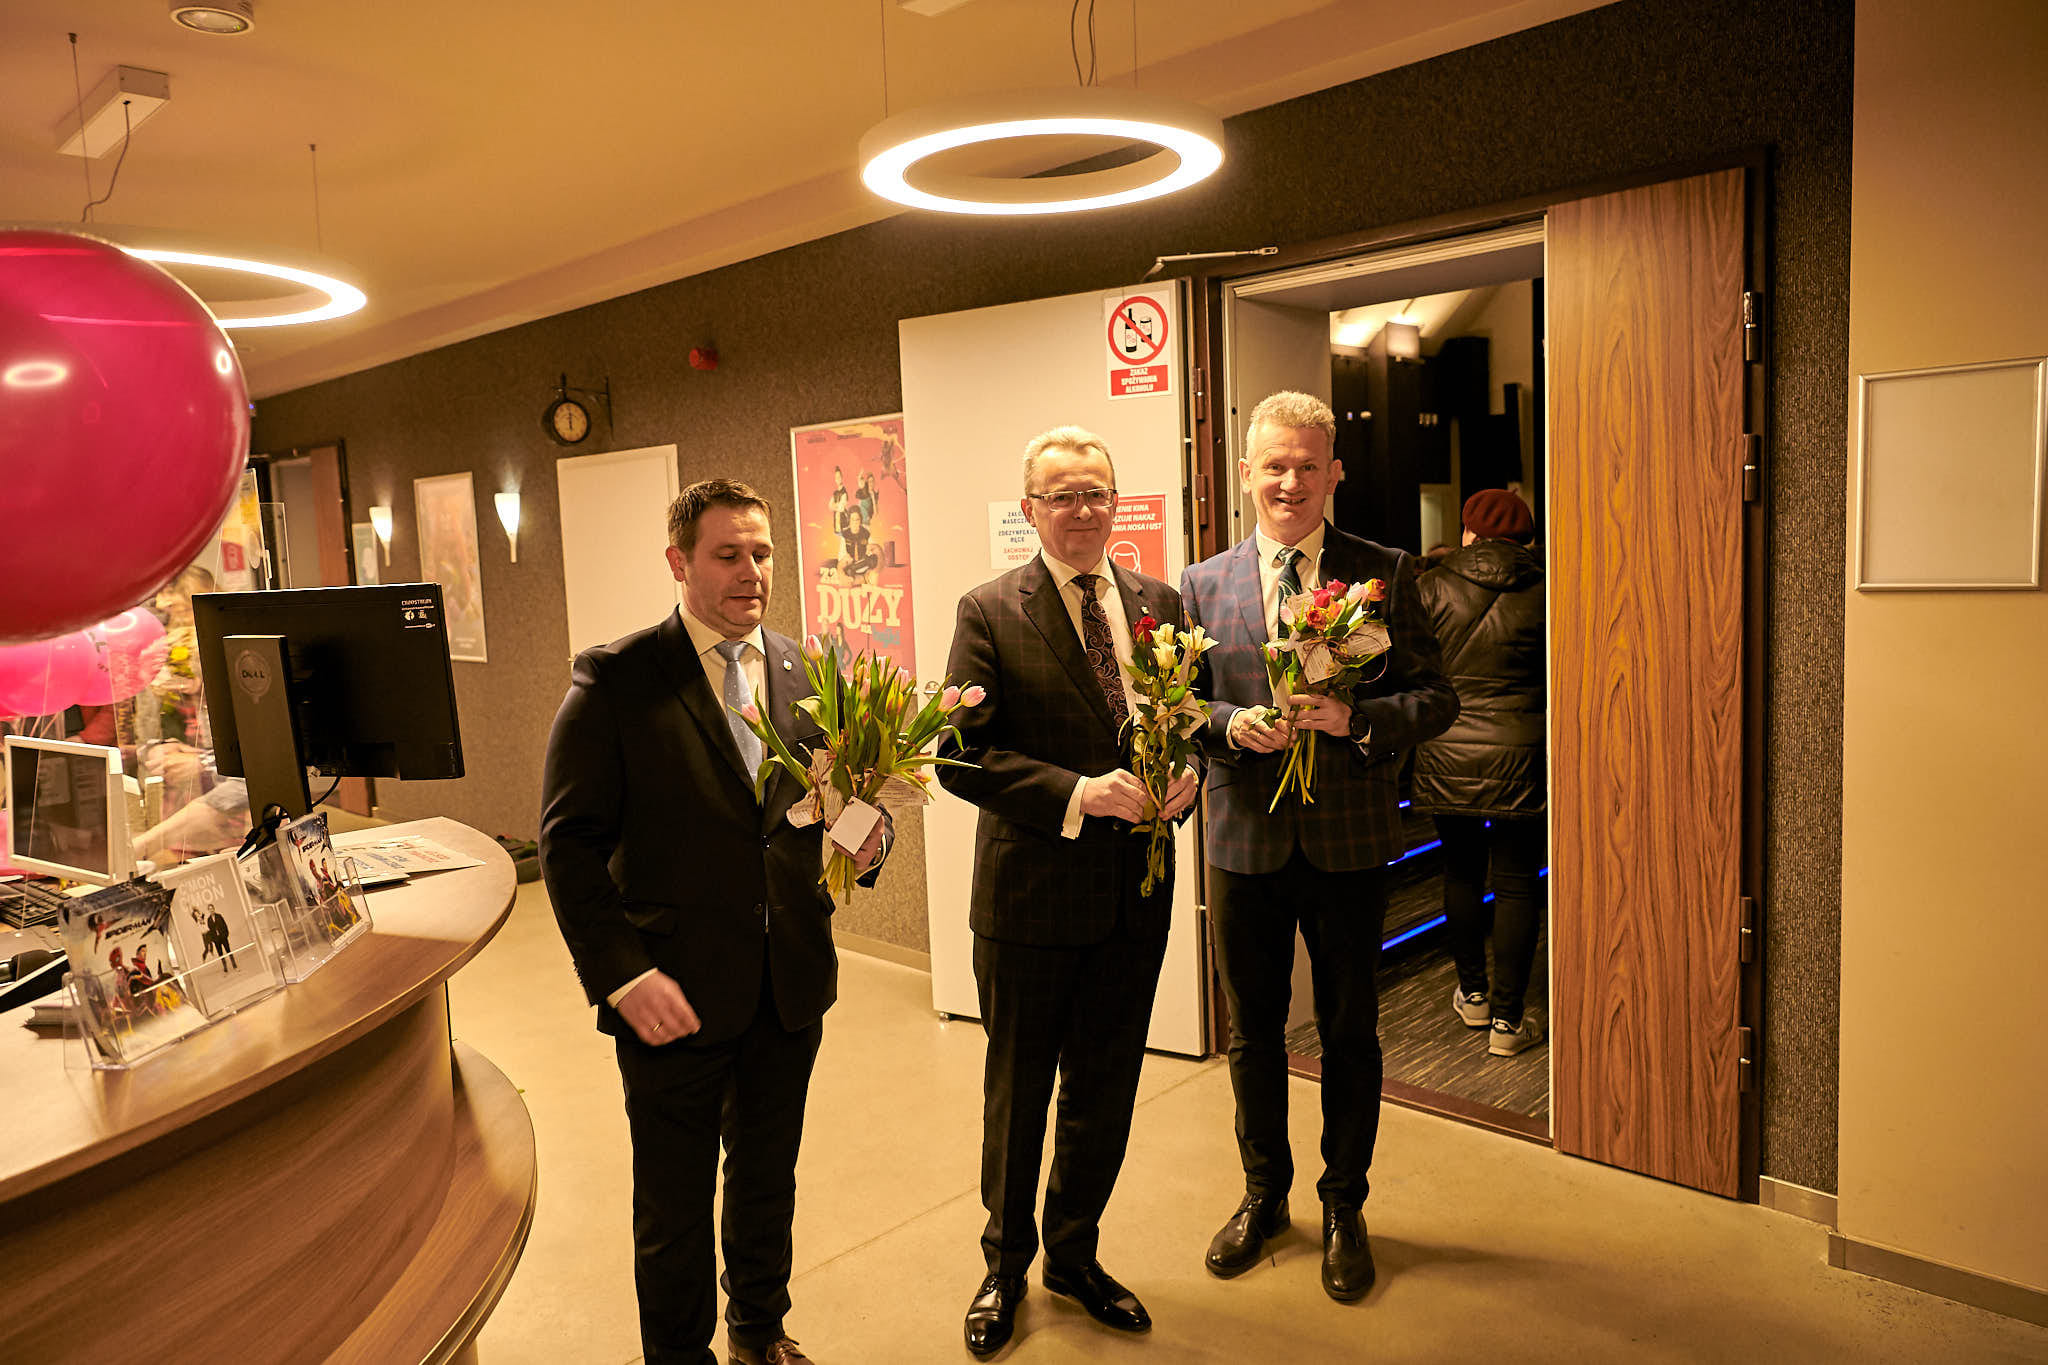 Z-ca burmistrza Grzegorz Molendowski, burmistrz Arkadiusz Sulima oraz sekretarz gminy Mirosław Chołuj trzymają w rękach kwiaty przygotowane dla Pań, które przychodzą na koncert.